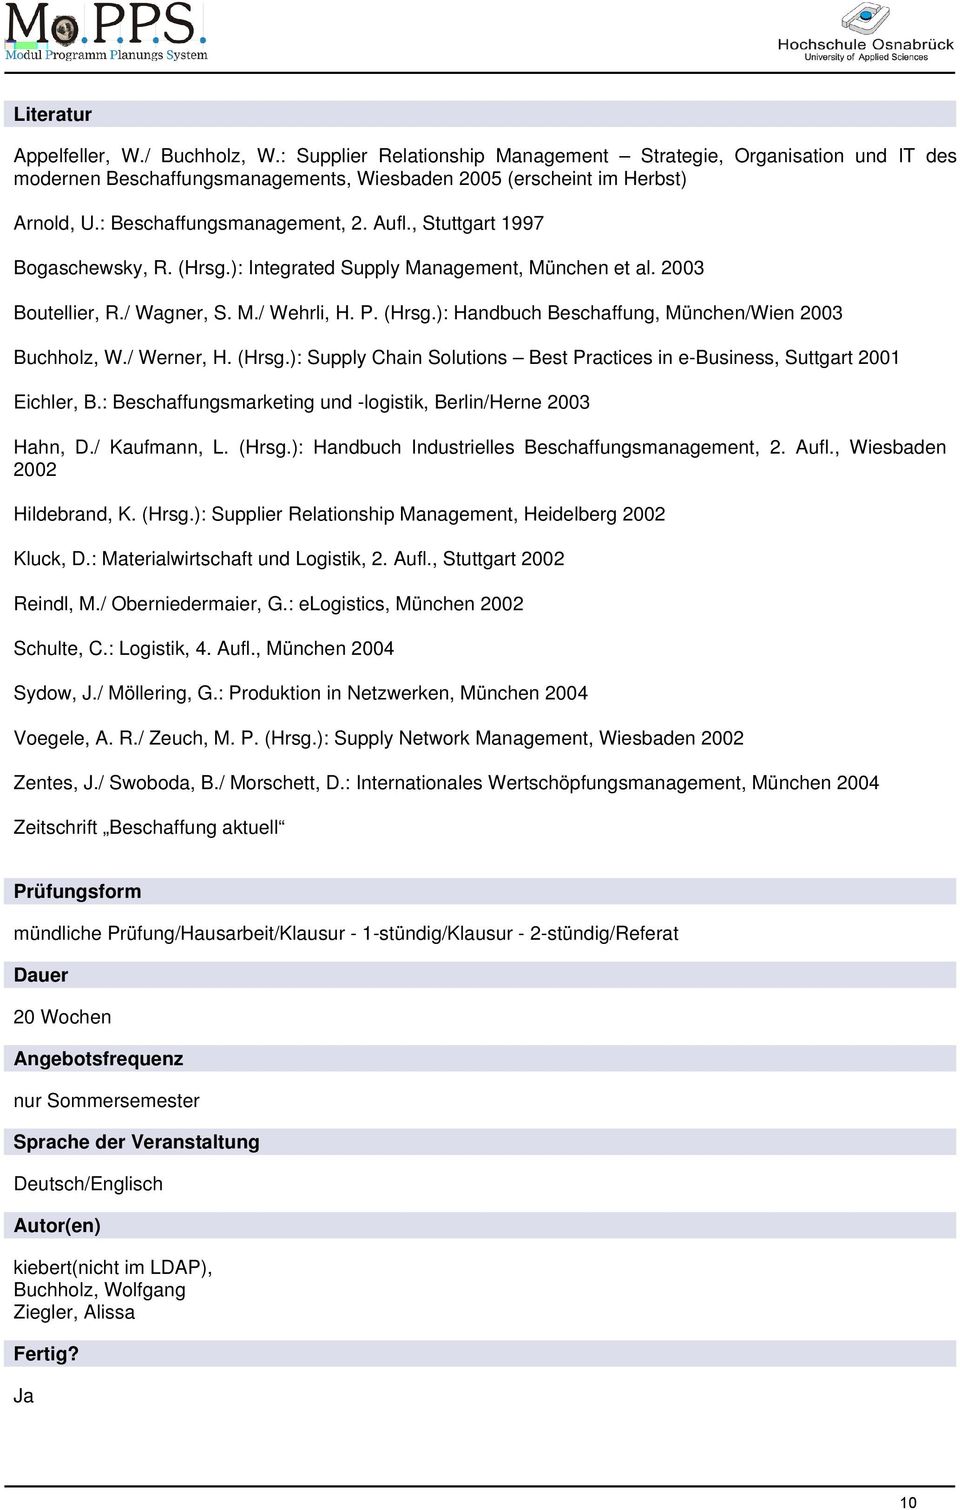 / Werner, H. (Hrsg.): Supply Chain Solutions Best Practices in e-business, Suttgart 2001 Eichler, B.: Beschaffungsmarketing und -logistik, Berlin/Herne 2003 Hahn, D./ Kaufmann, L. (Hrsg.): Handbuch Industrielles Beschaffungsmanagement, 2.